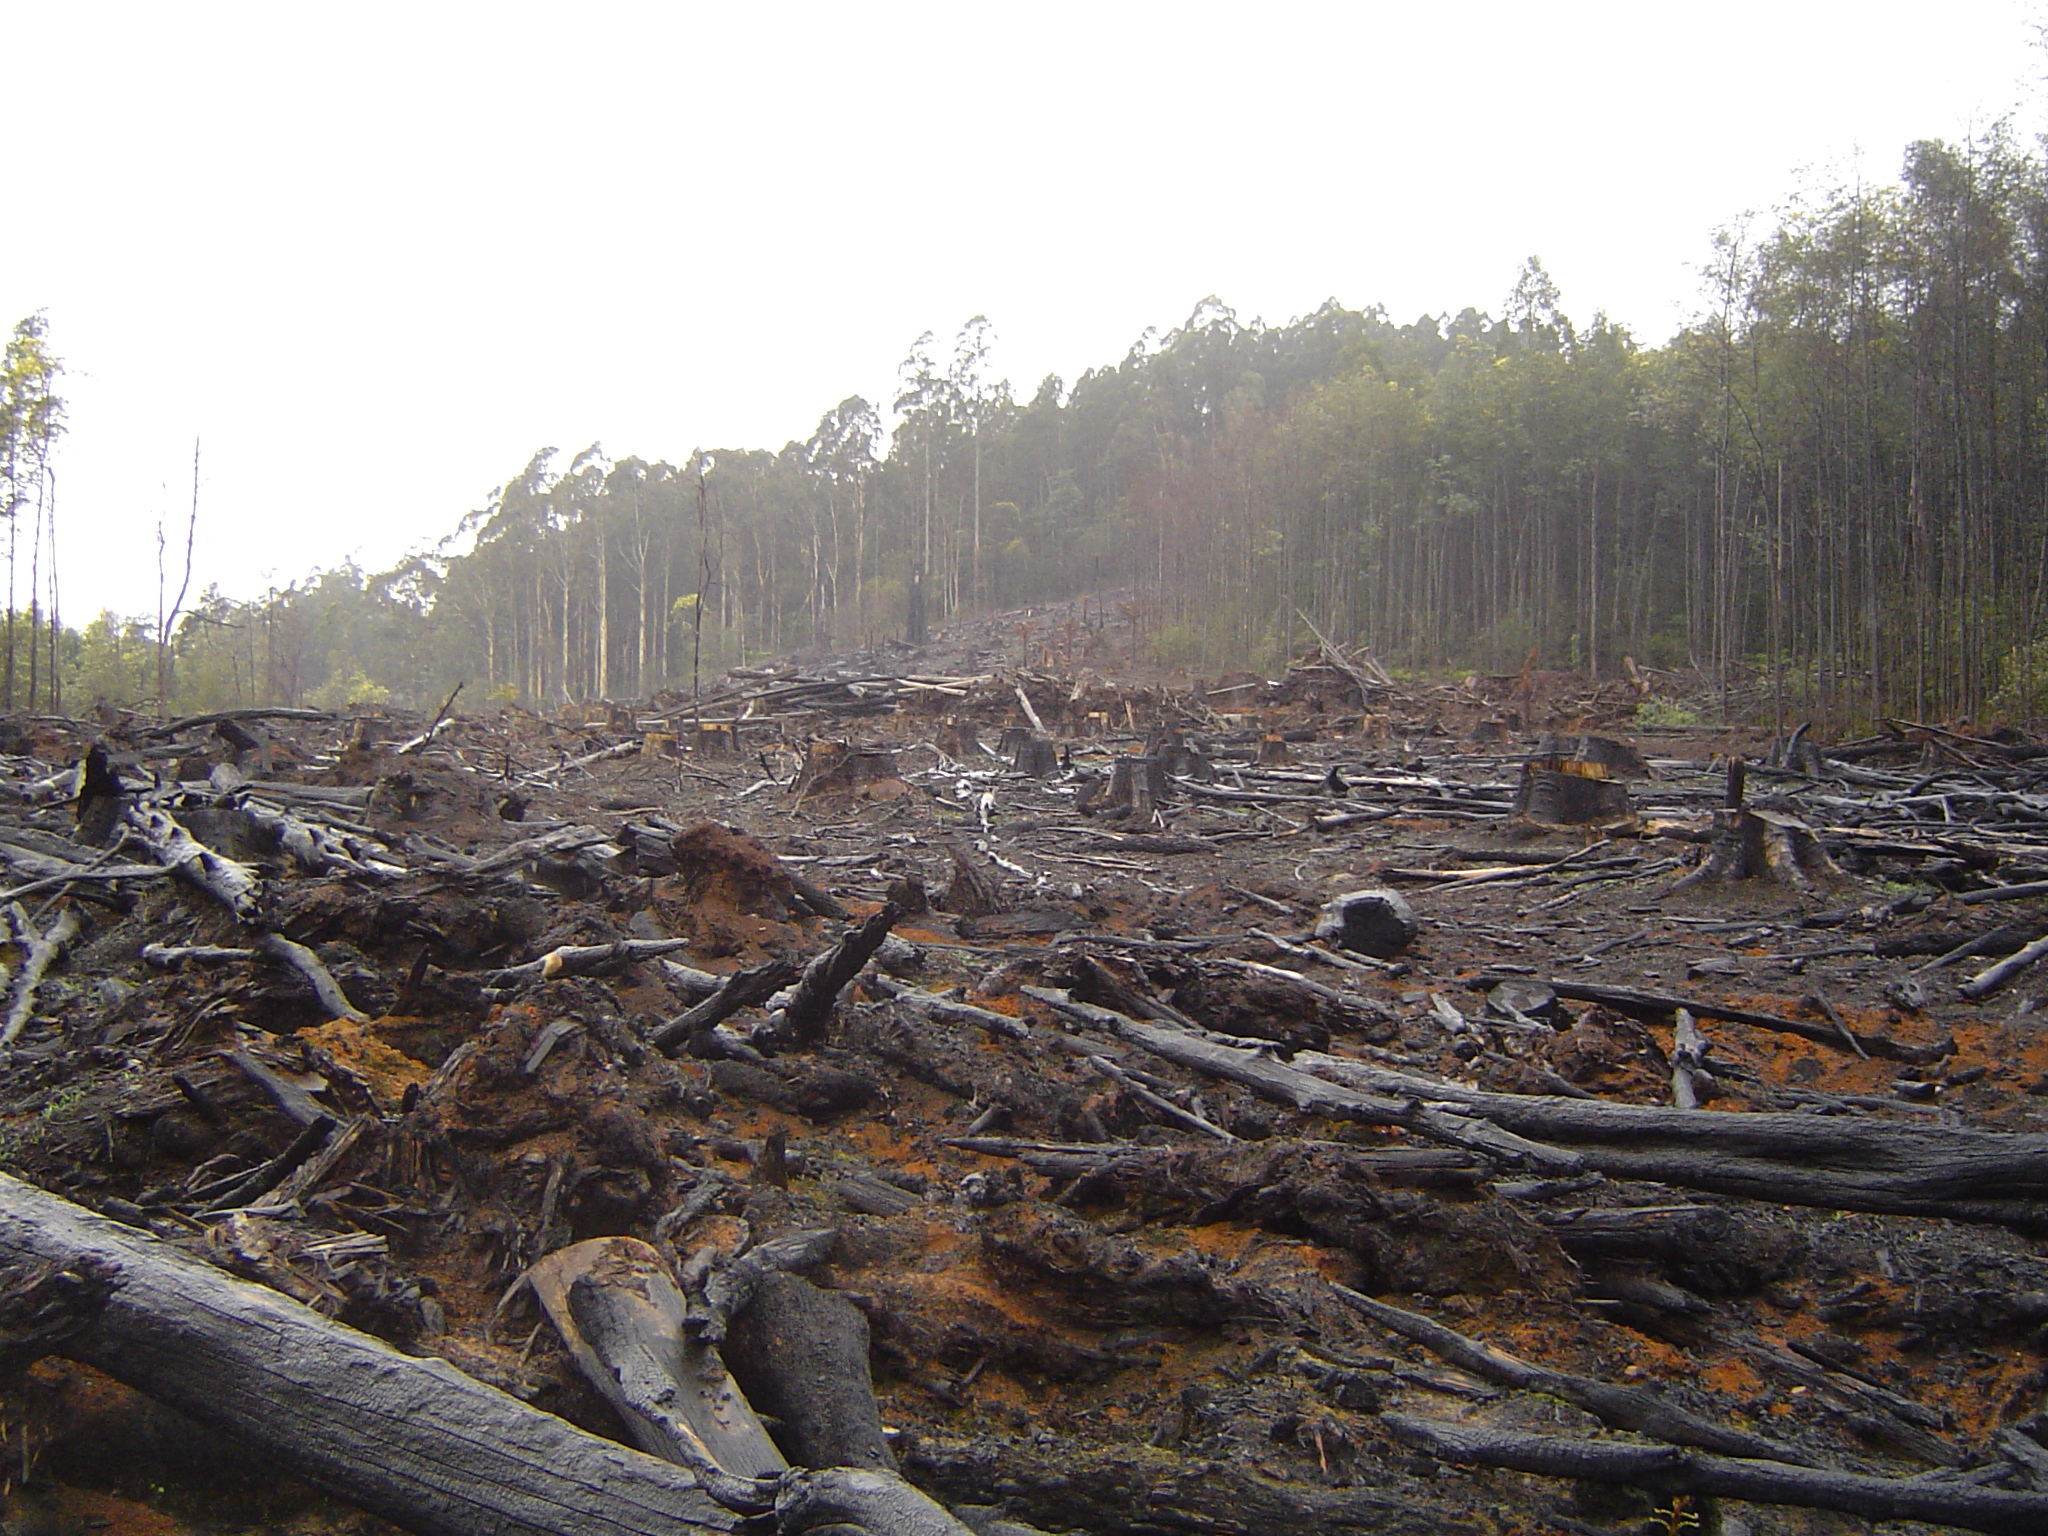 La déforestation menace la planète. Elle provoque des émissions de gaz à effet de serre et une perte significative de la biodiversité. © crustmania/Flickr